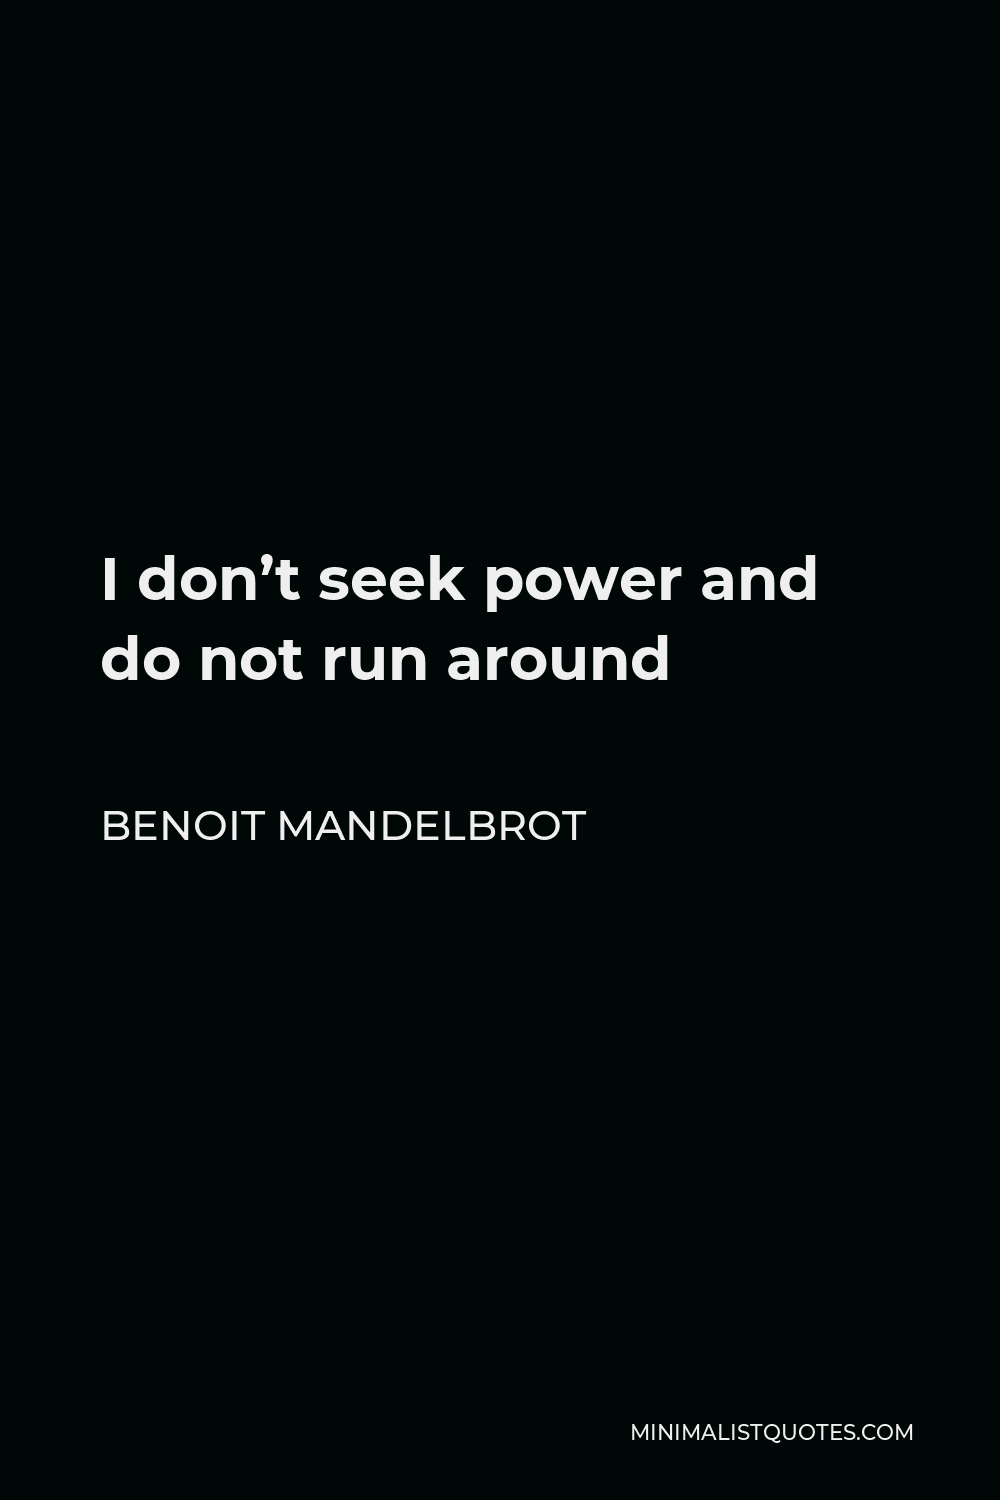 Benoit Mandelbrot Quote - I don’t seek power and do not run around